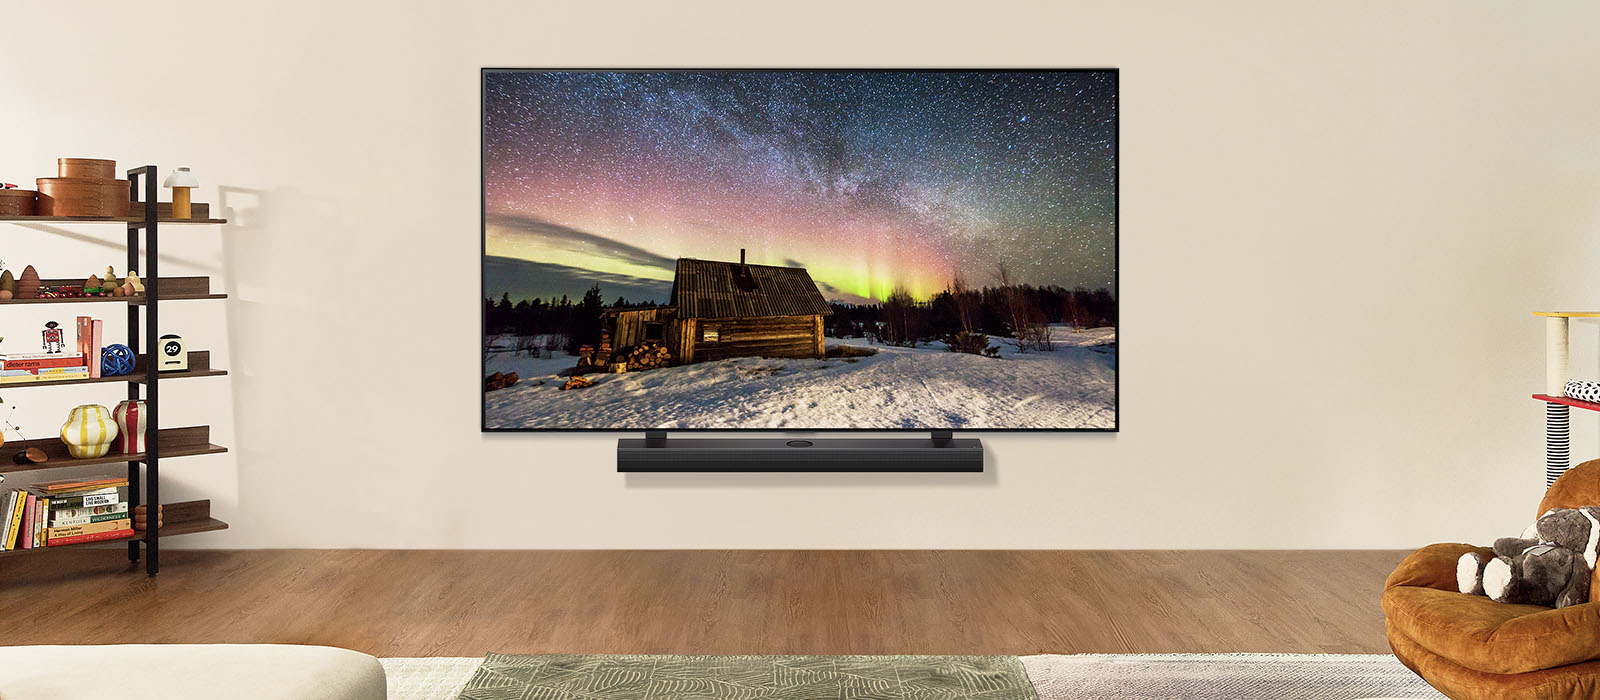 LG TV ו-LG Soundbar בחלל מגורים מודרני בשעות היום. תמונת הזוהר הצפוני שעל המסך מוצגת ברמת הבהירות האופטימלית.